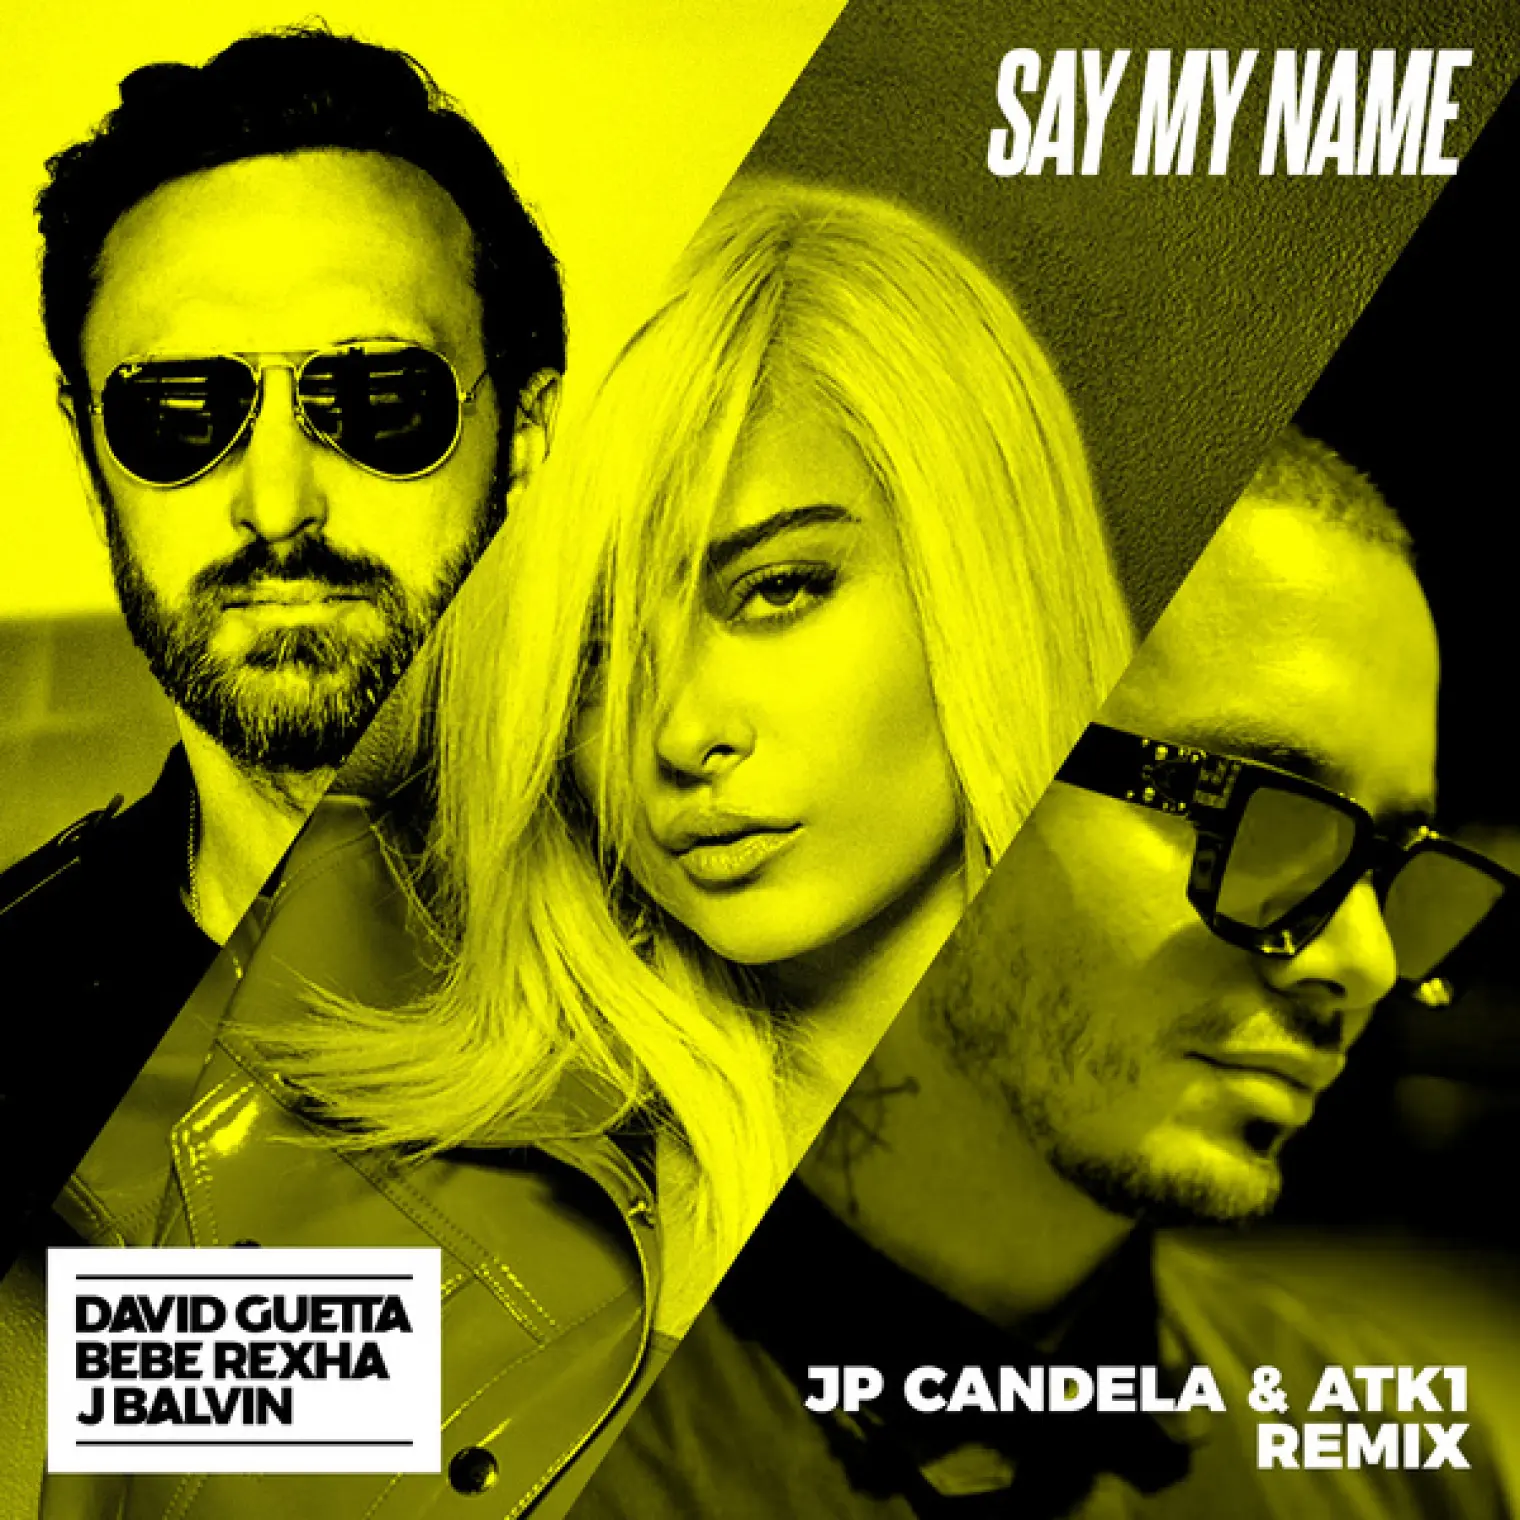 Say My Name (feat. Bebe Rexha & J. Balvin) (JP Candela & ATK1 Remix) -  David Guetta 